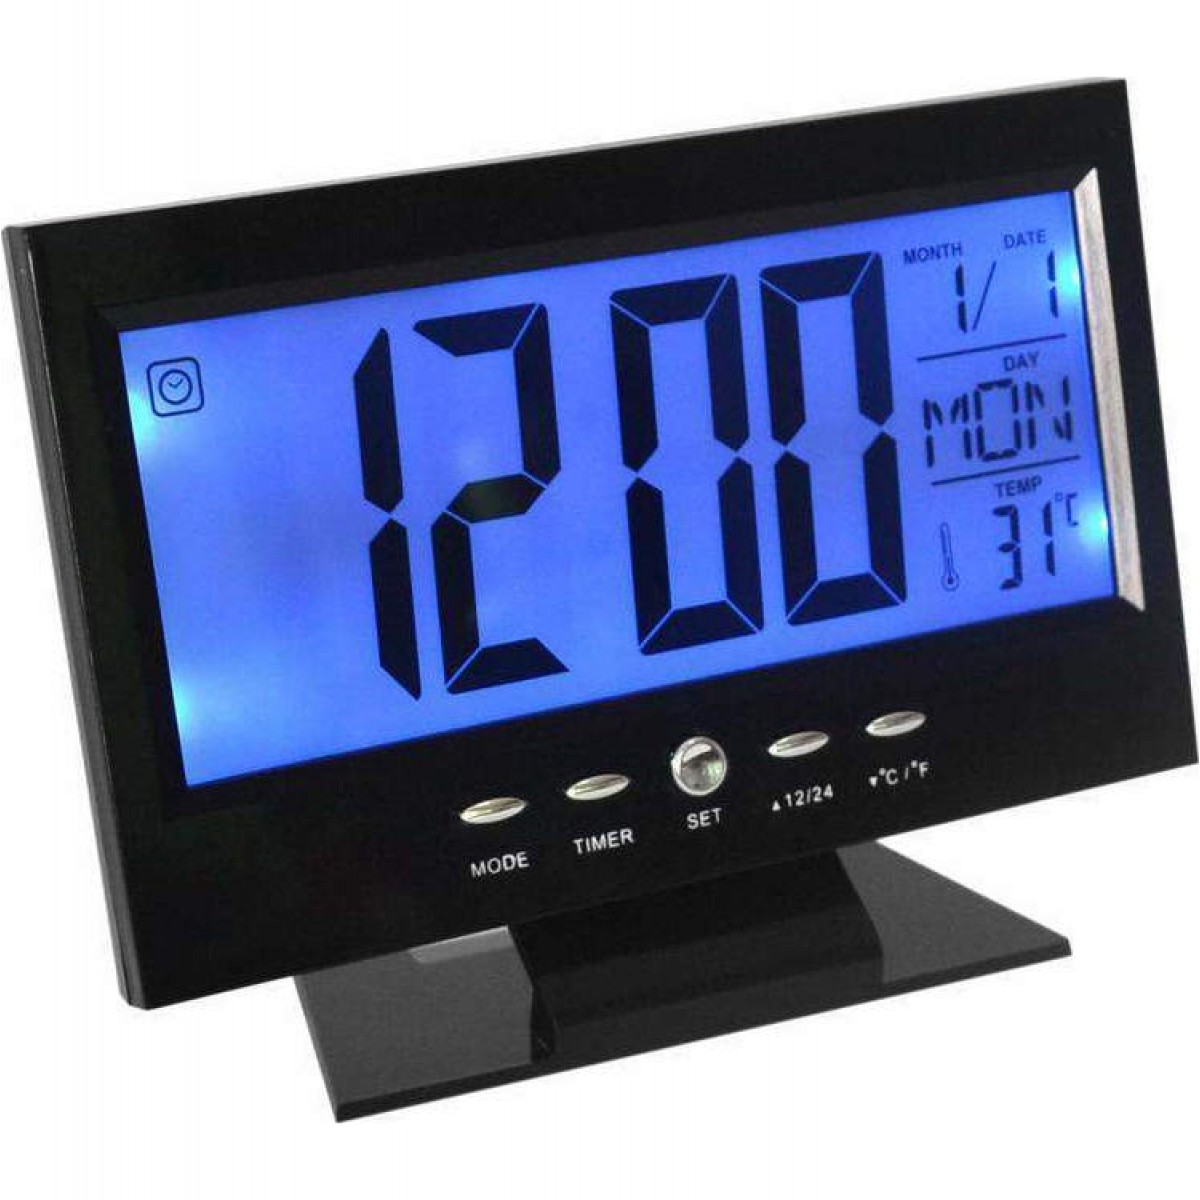 ρολόι με ξυπνητήρι, αισθητήρα ήχου, lcd οθόνη, θερμοκρασία voice control back-light lcd clock